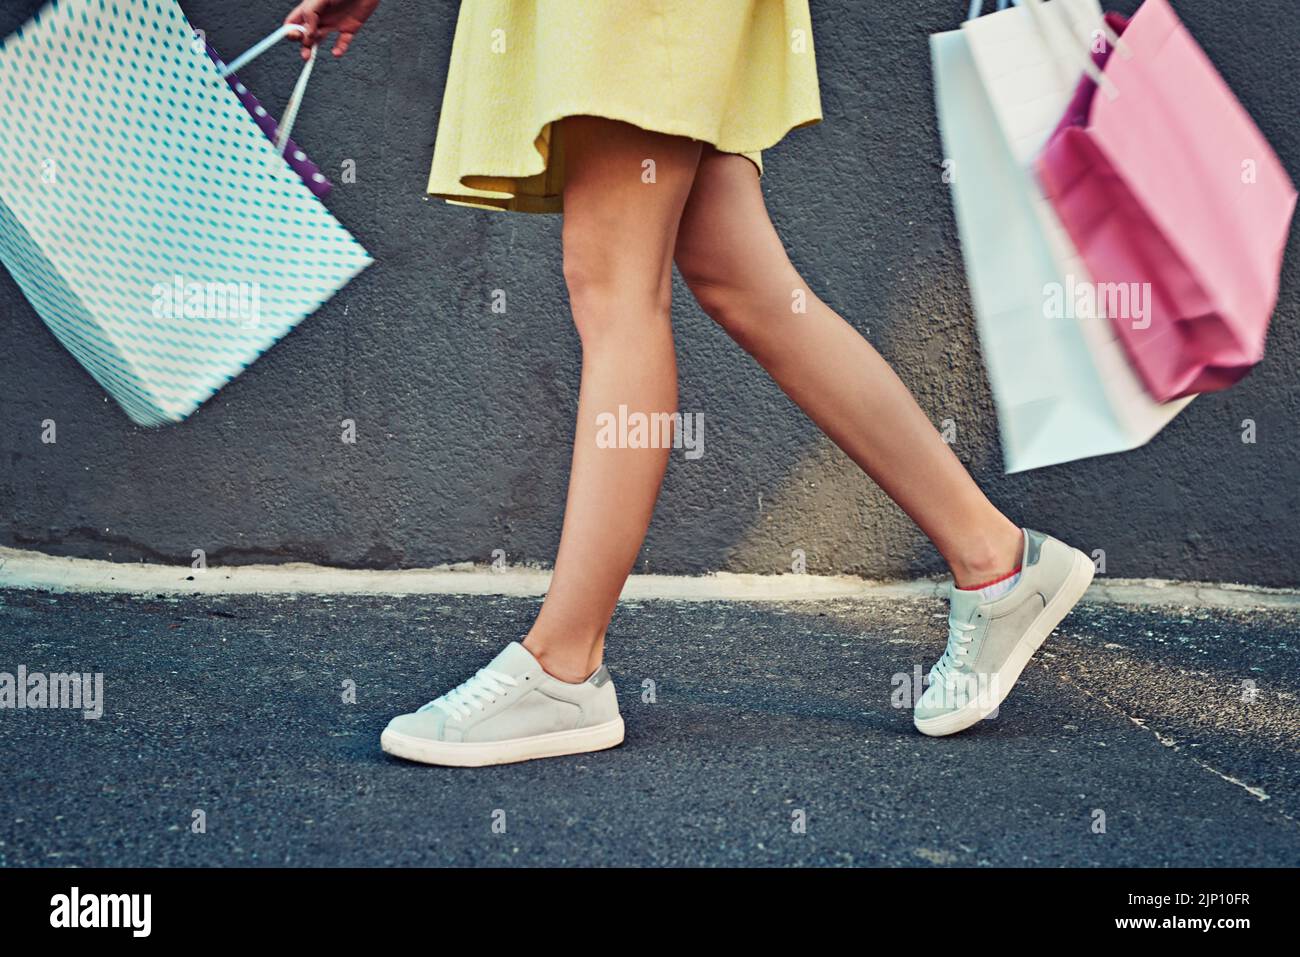 Shopping aber keine Wege im Dropping. Eine unkenntliche Frau auf einem Einkaufsbummel in der Stadt. Stockfoto